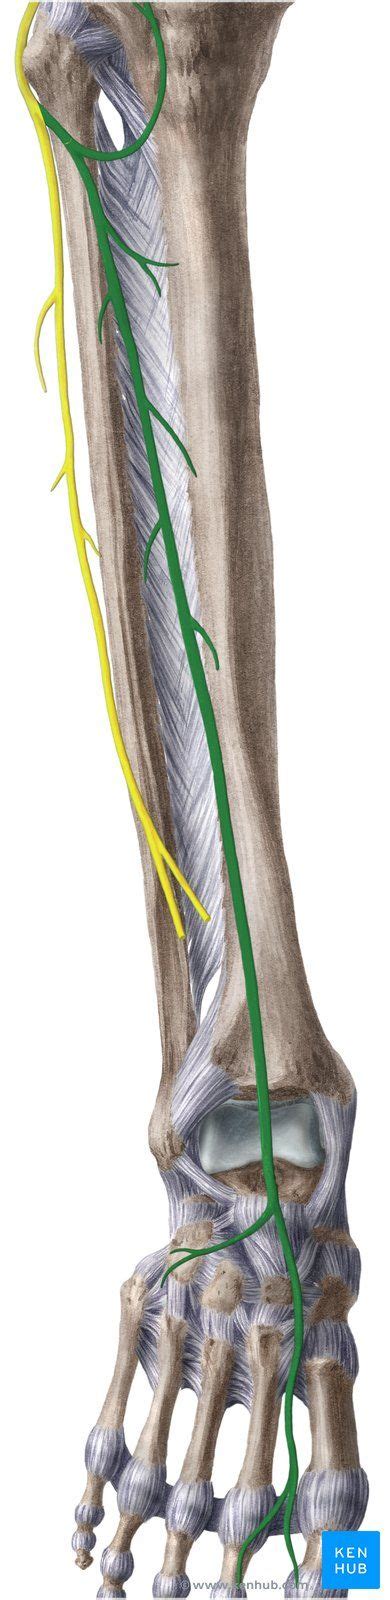 Common Fibular Nerve Common Fibular Nerve Nerve Anatomy Nerve